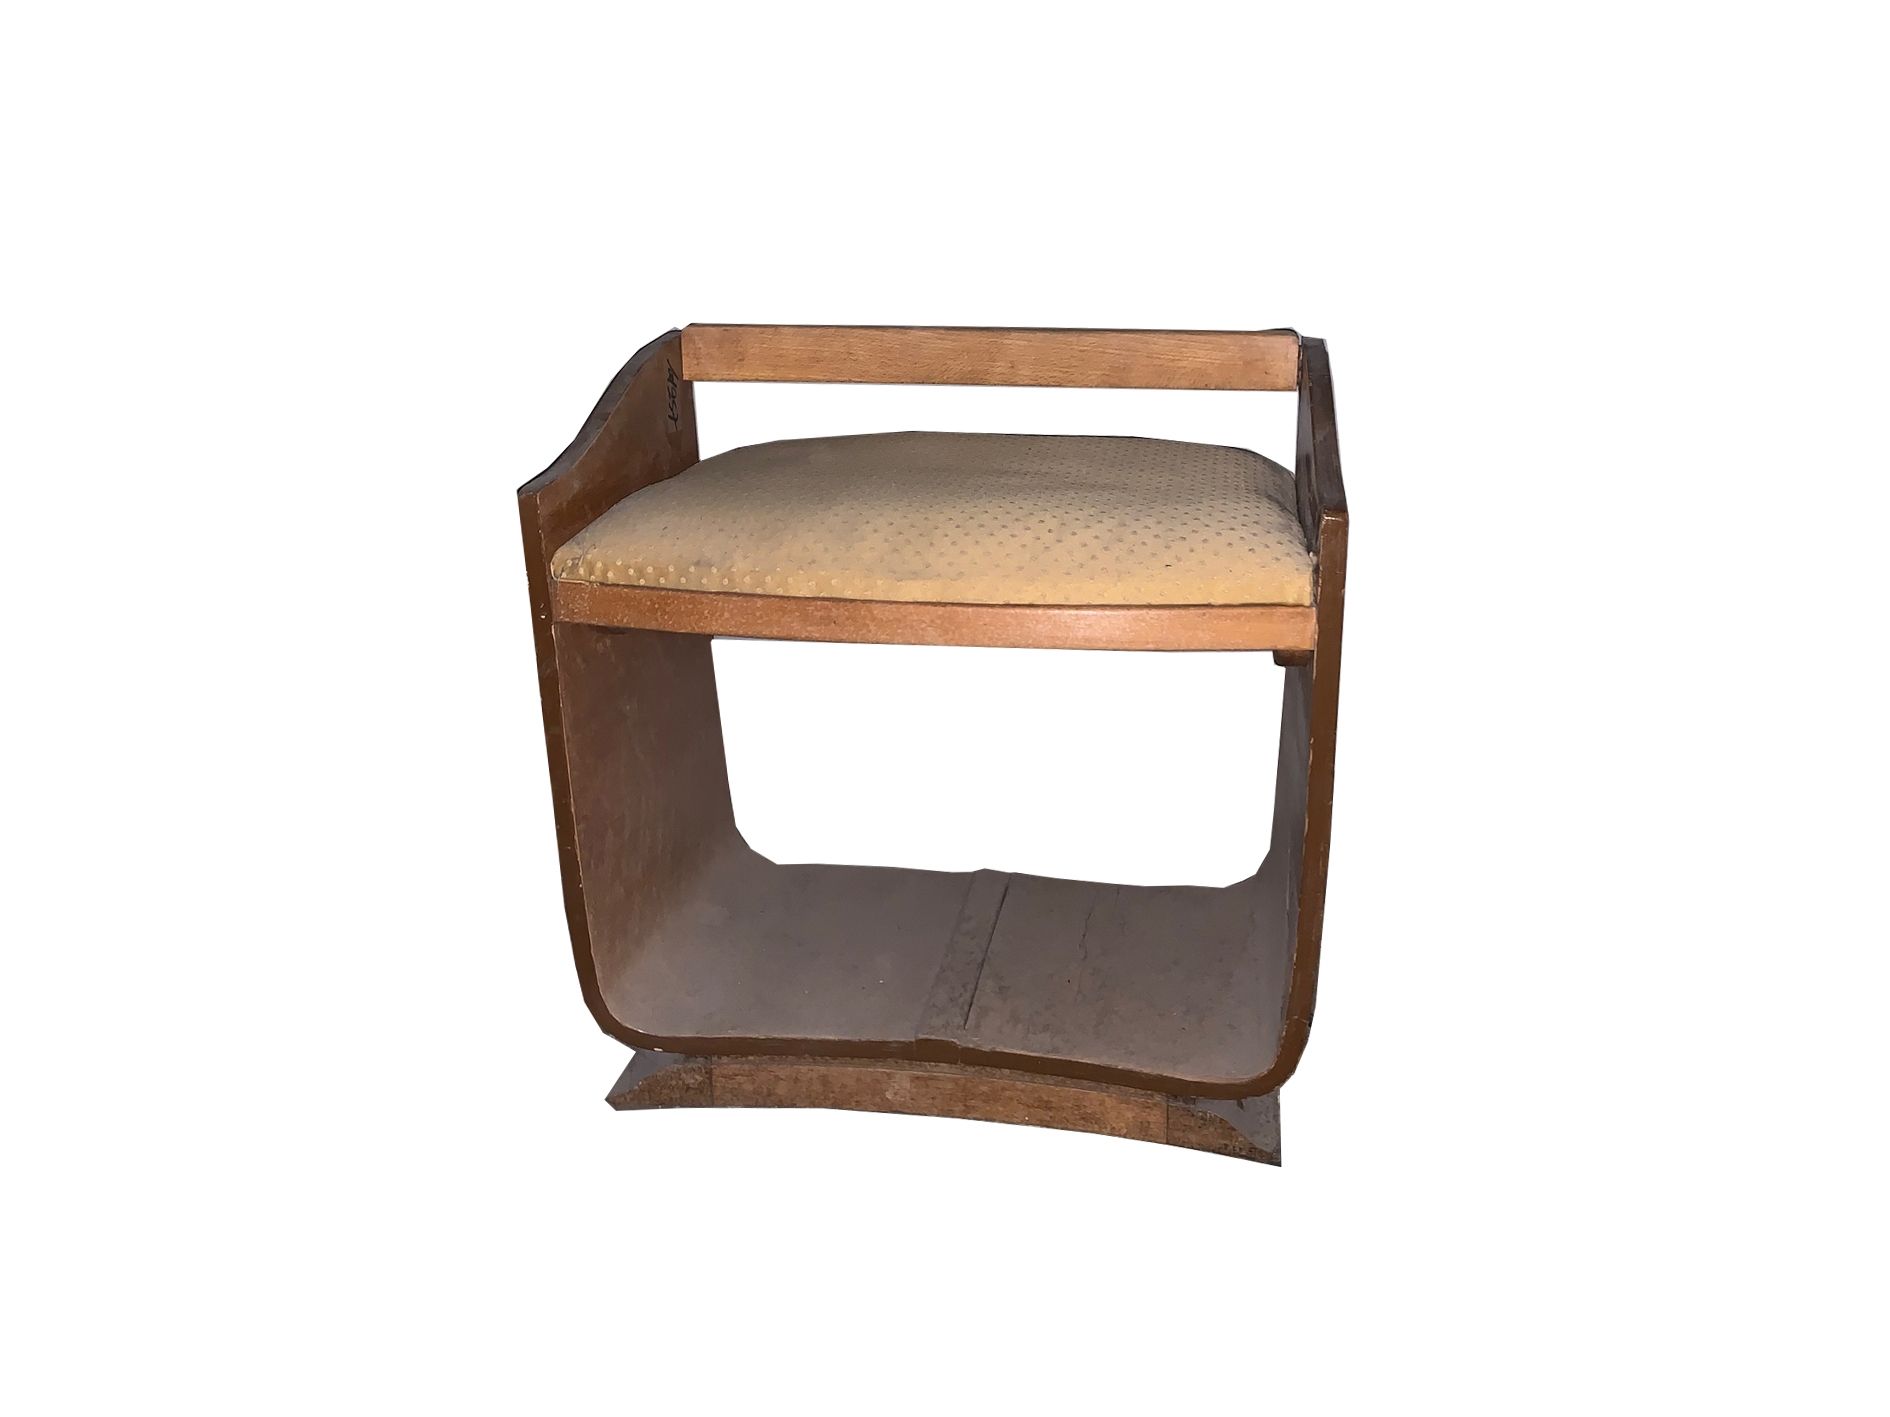 Tabouret 
非常好的凳子。饰面木材。黄色织物座椅。 将要进行的修复。